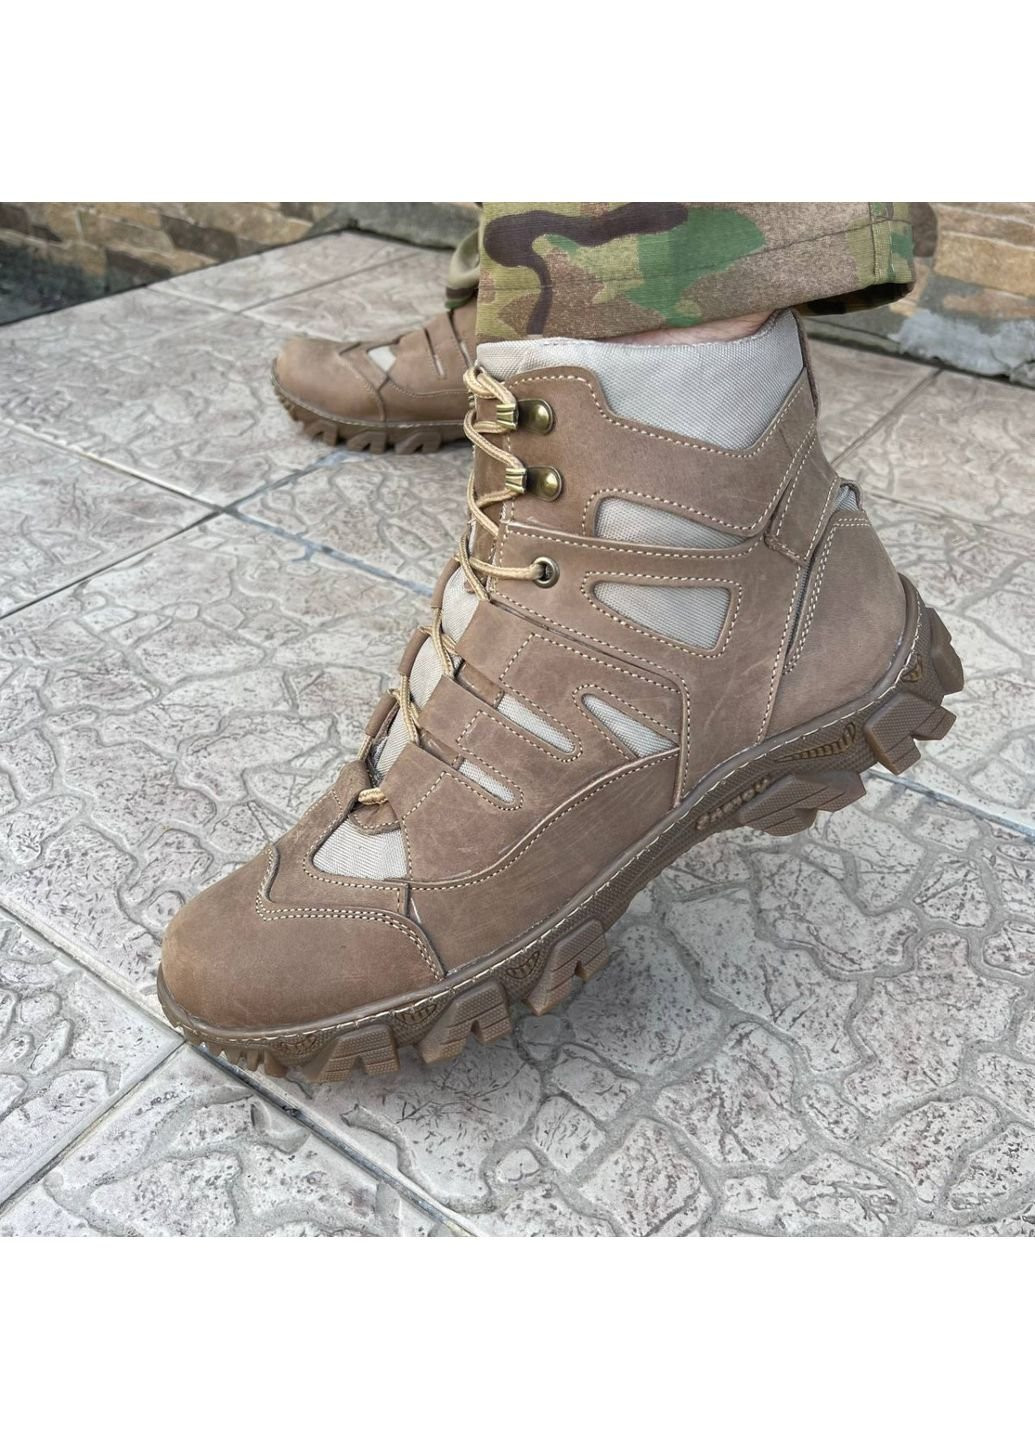 Коричневые осенние ботинки военные тактические всу (зсу) 7527 42 р 27,5 см коричневые KNF